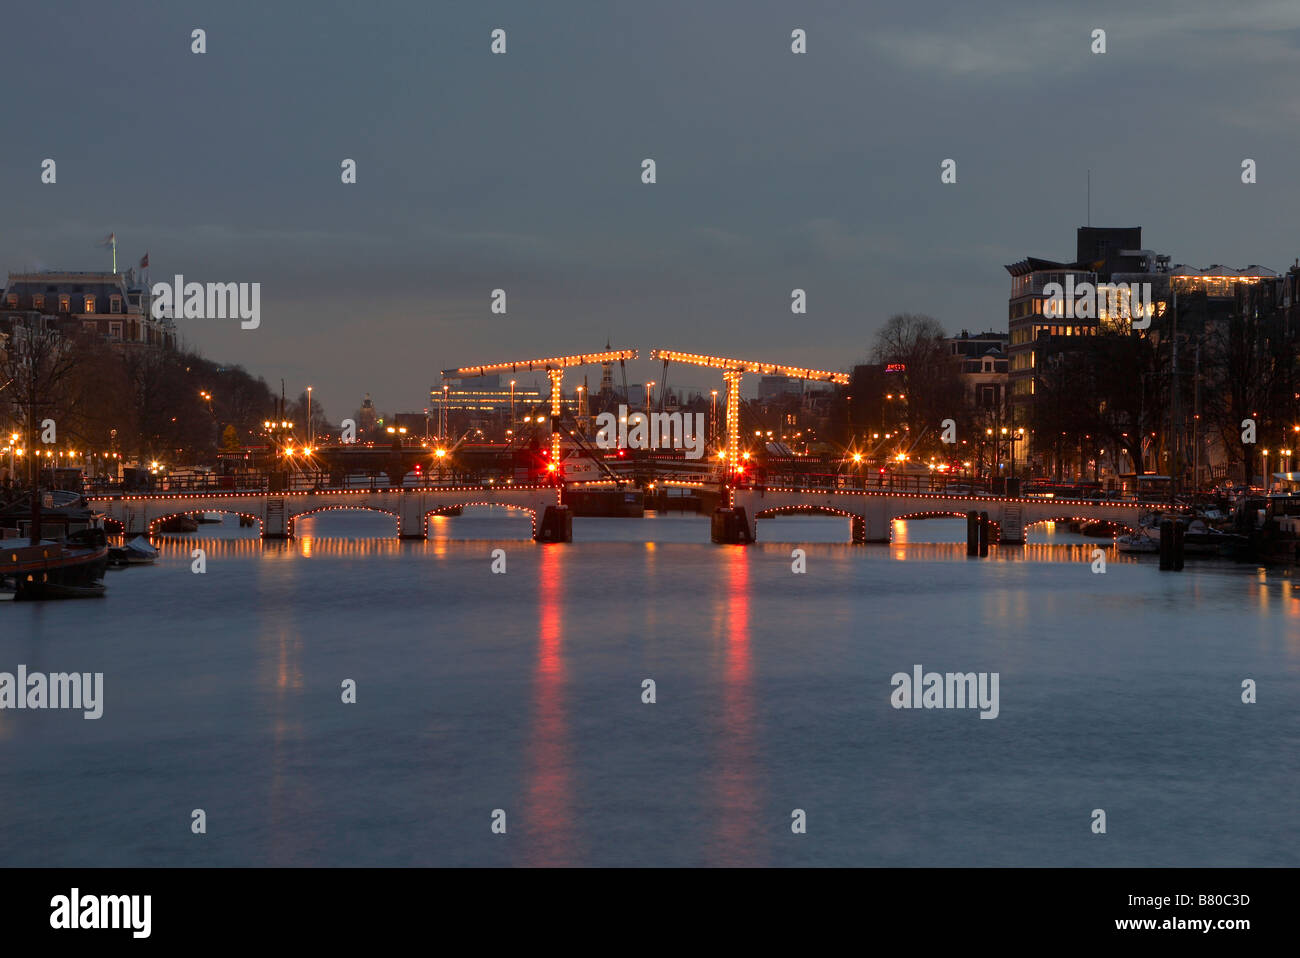 Magere Brug (el puente flaco) sobre el Amstel, Amsterdam, Países Bajos Foto de stock